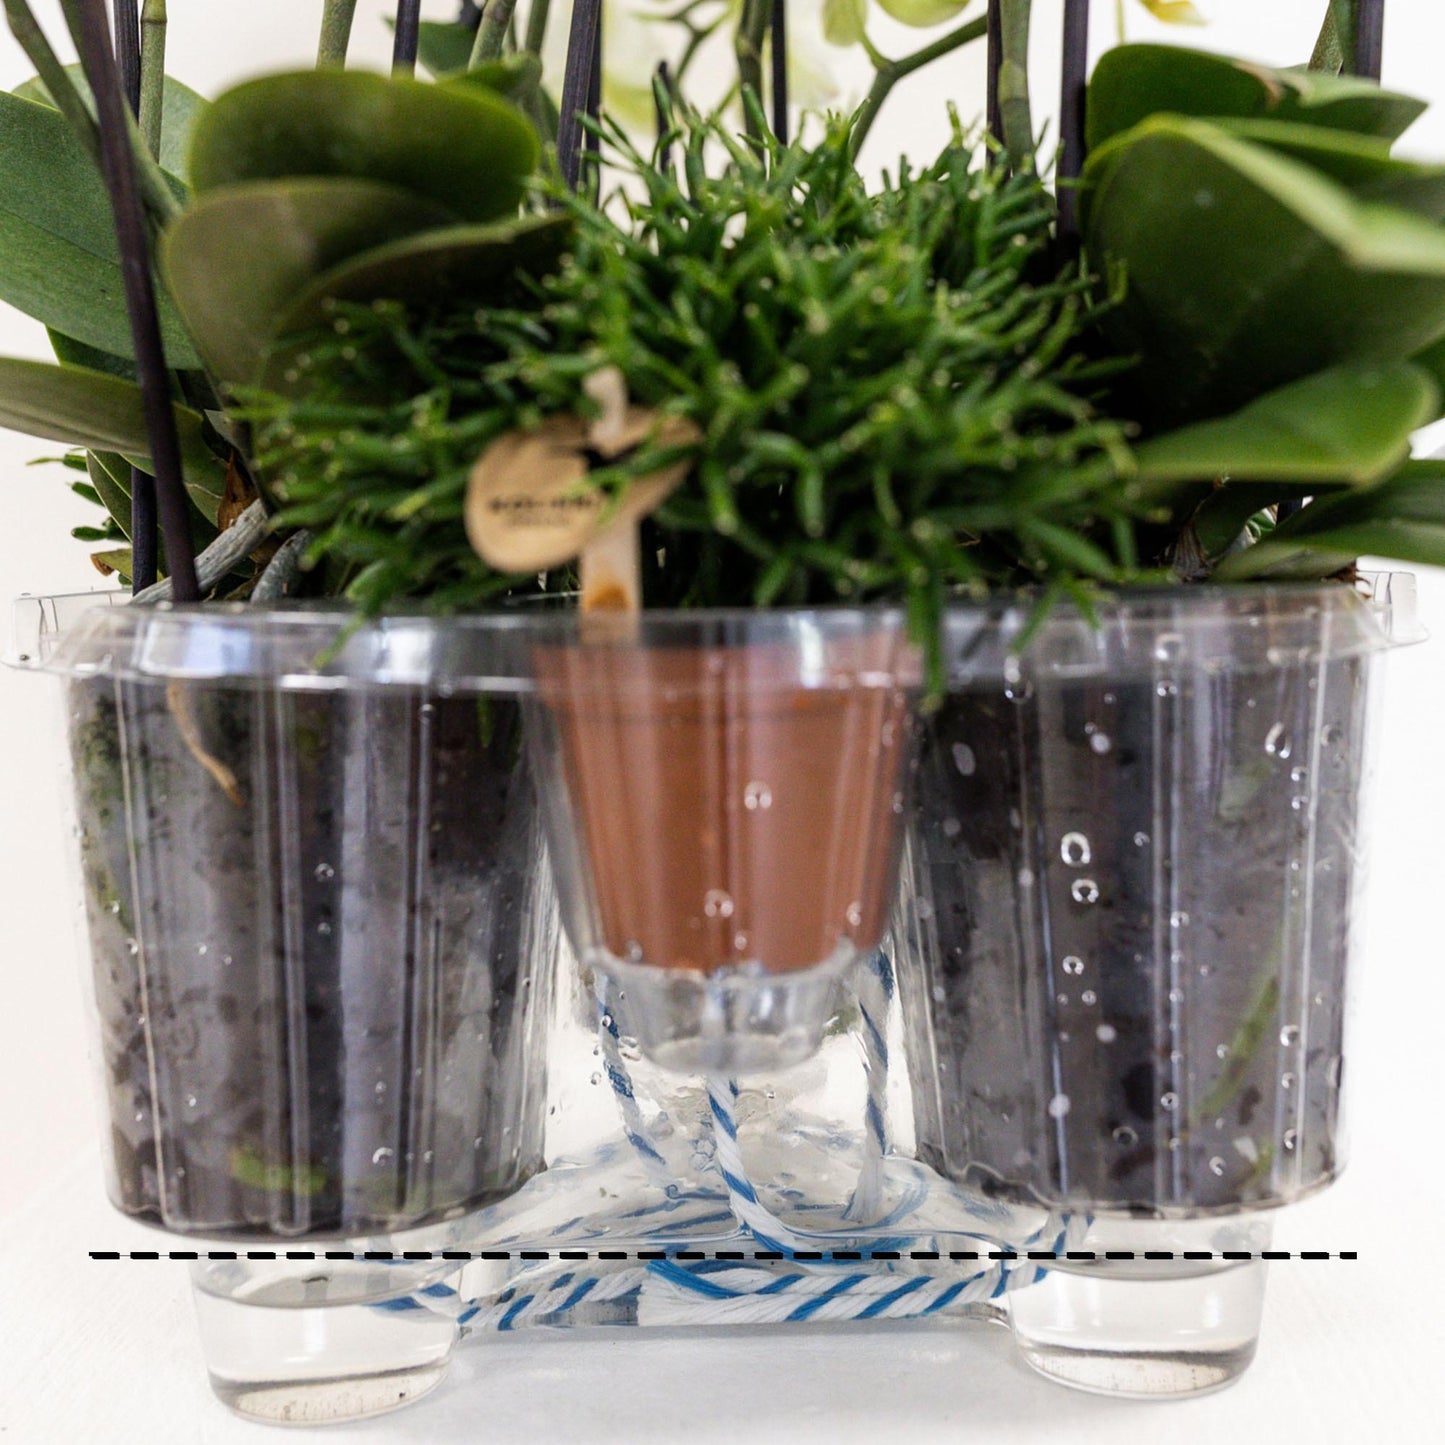 Kolibri Orchids | witte plantenset in Reed Basket incl. waterreservoir | drie witte orchideeën Amabilis 9cm en drie groene planten Rhipsalis | Jungle Bouquet wit met zelfvoorzienend waterreservoir